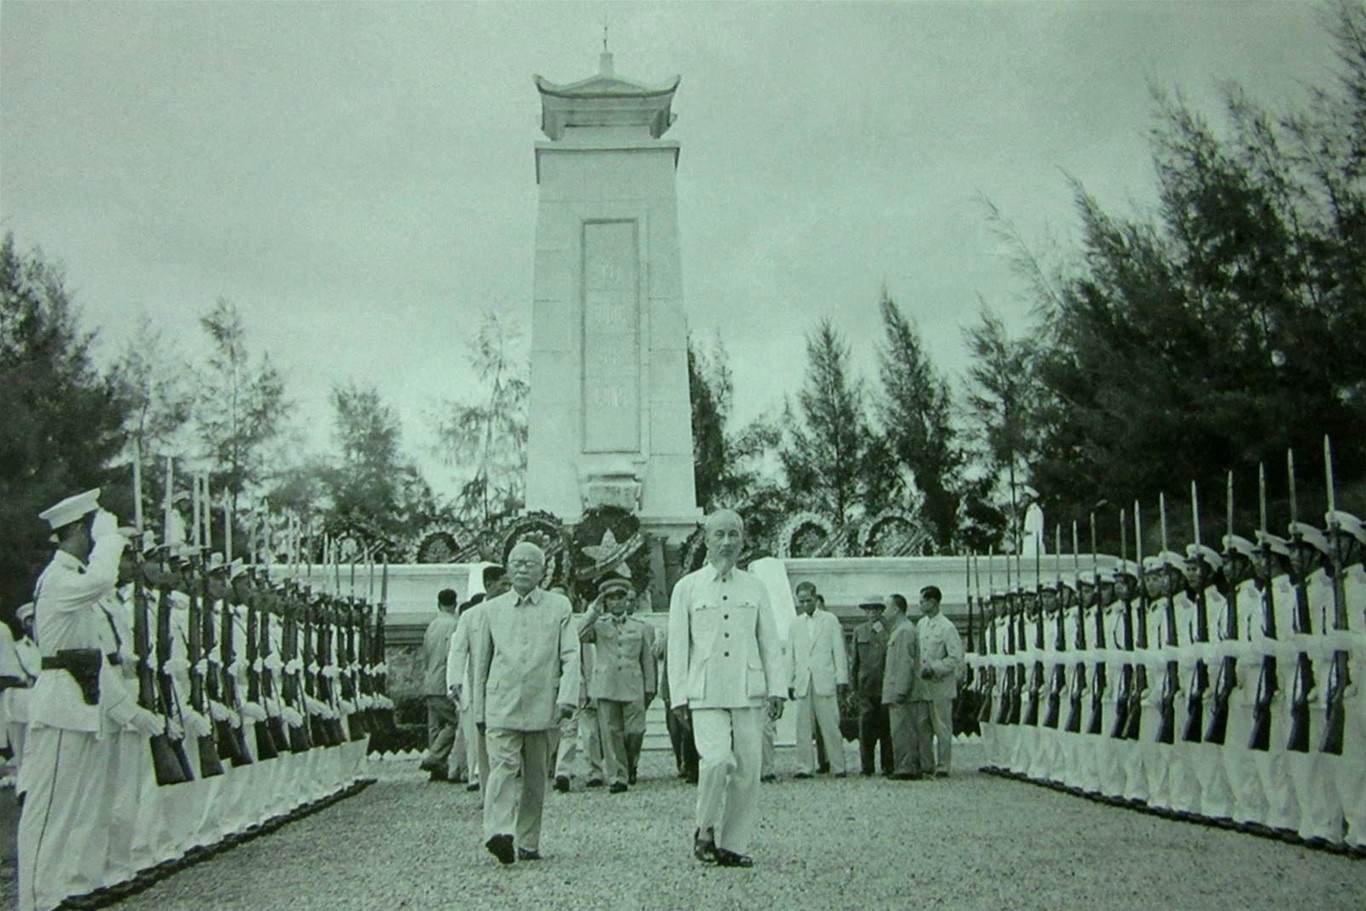 Ngày 2/9/1955, Bác Hồ cùng các đồng chí lãnh đạo Đảng, Nhà nước tới đặt vòng hoa viếng các liệt sĩ tại Nghĩa trang Mai Dịch, Hà Nội. Ảnh: Bảo tàng Hồ Chí Minh